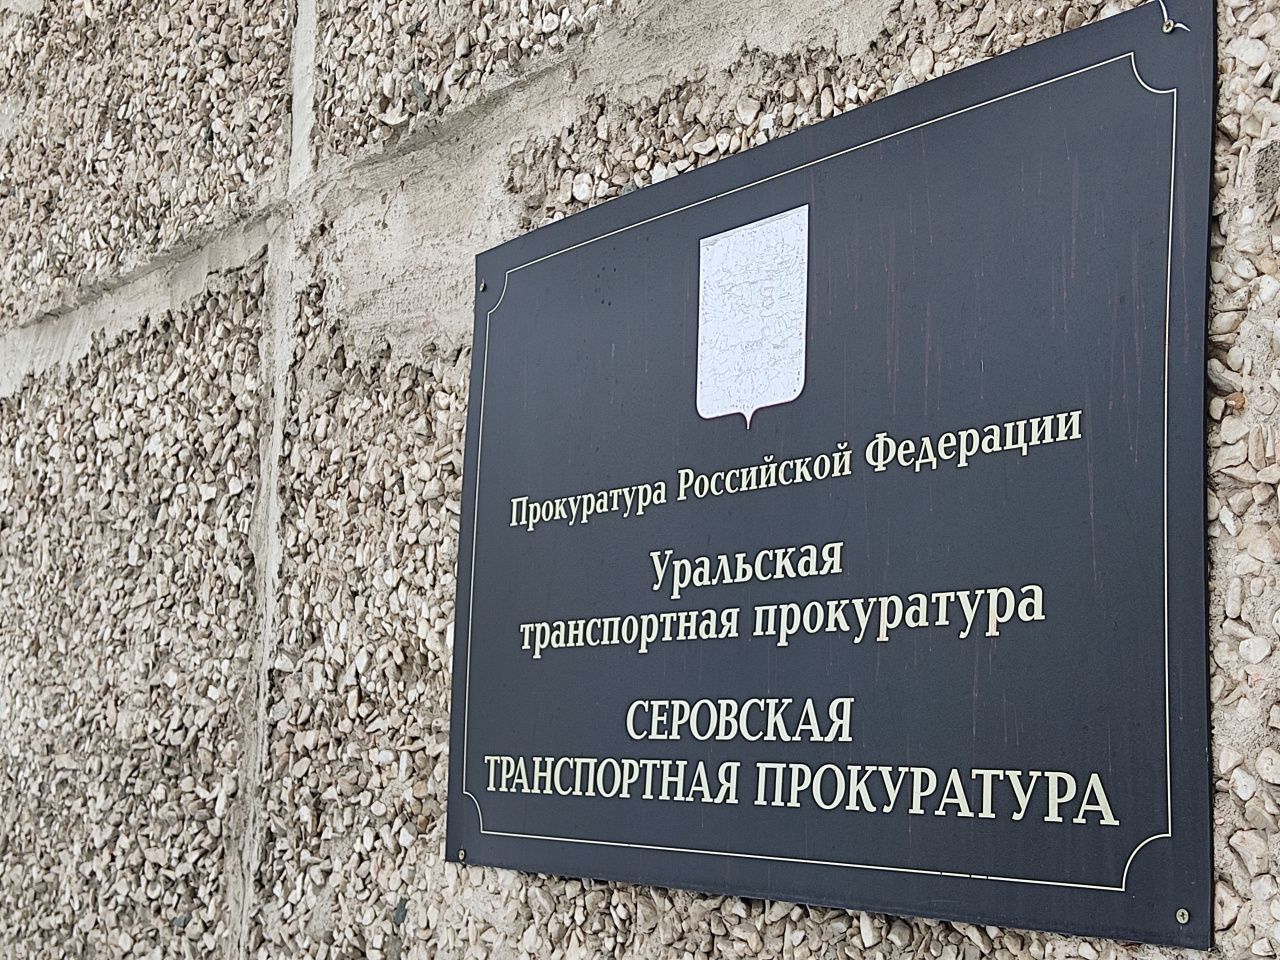 Серовский транспортный прокурор побуждал железнодорожников вакцинироваться против коронавируса